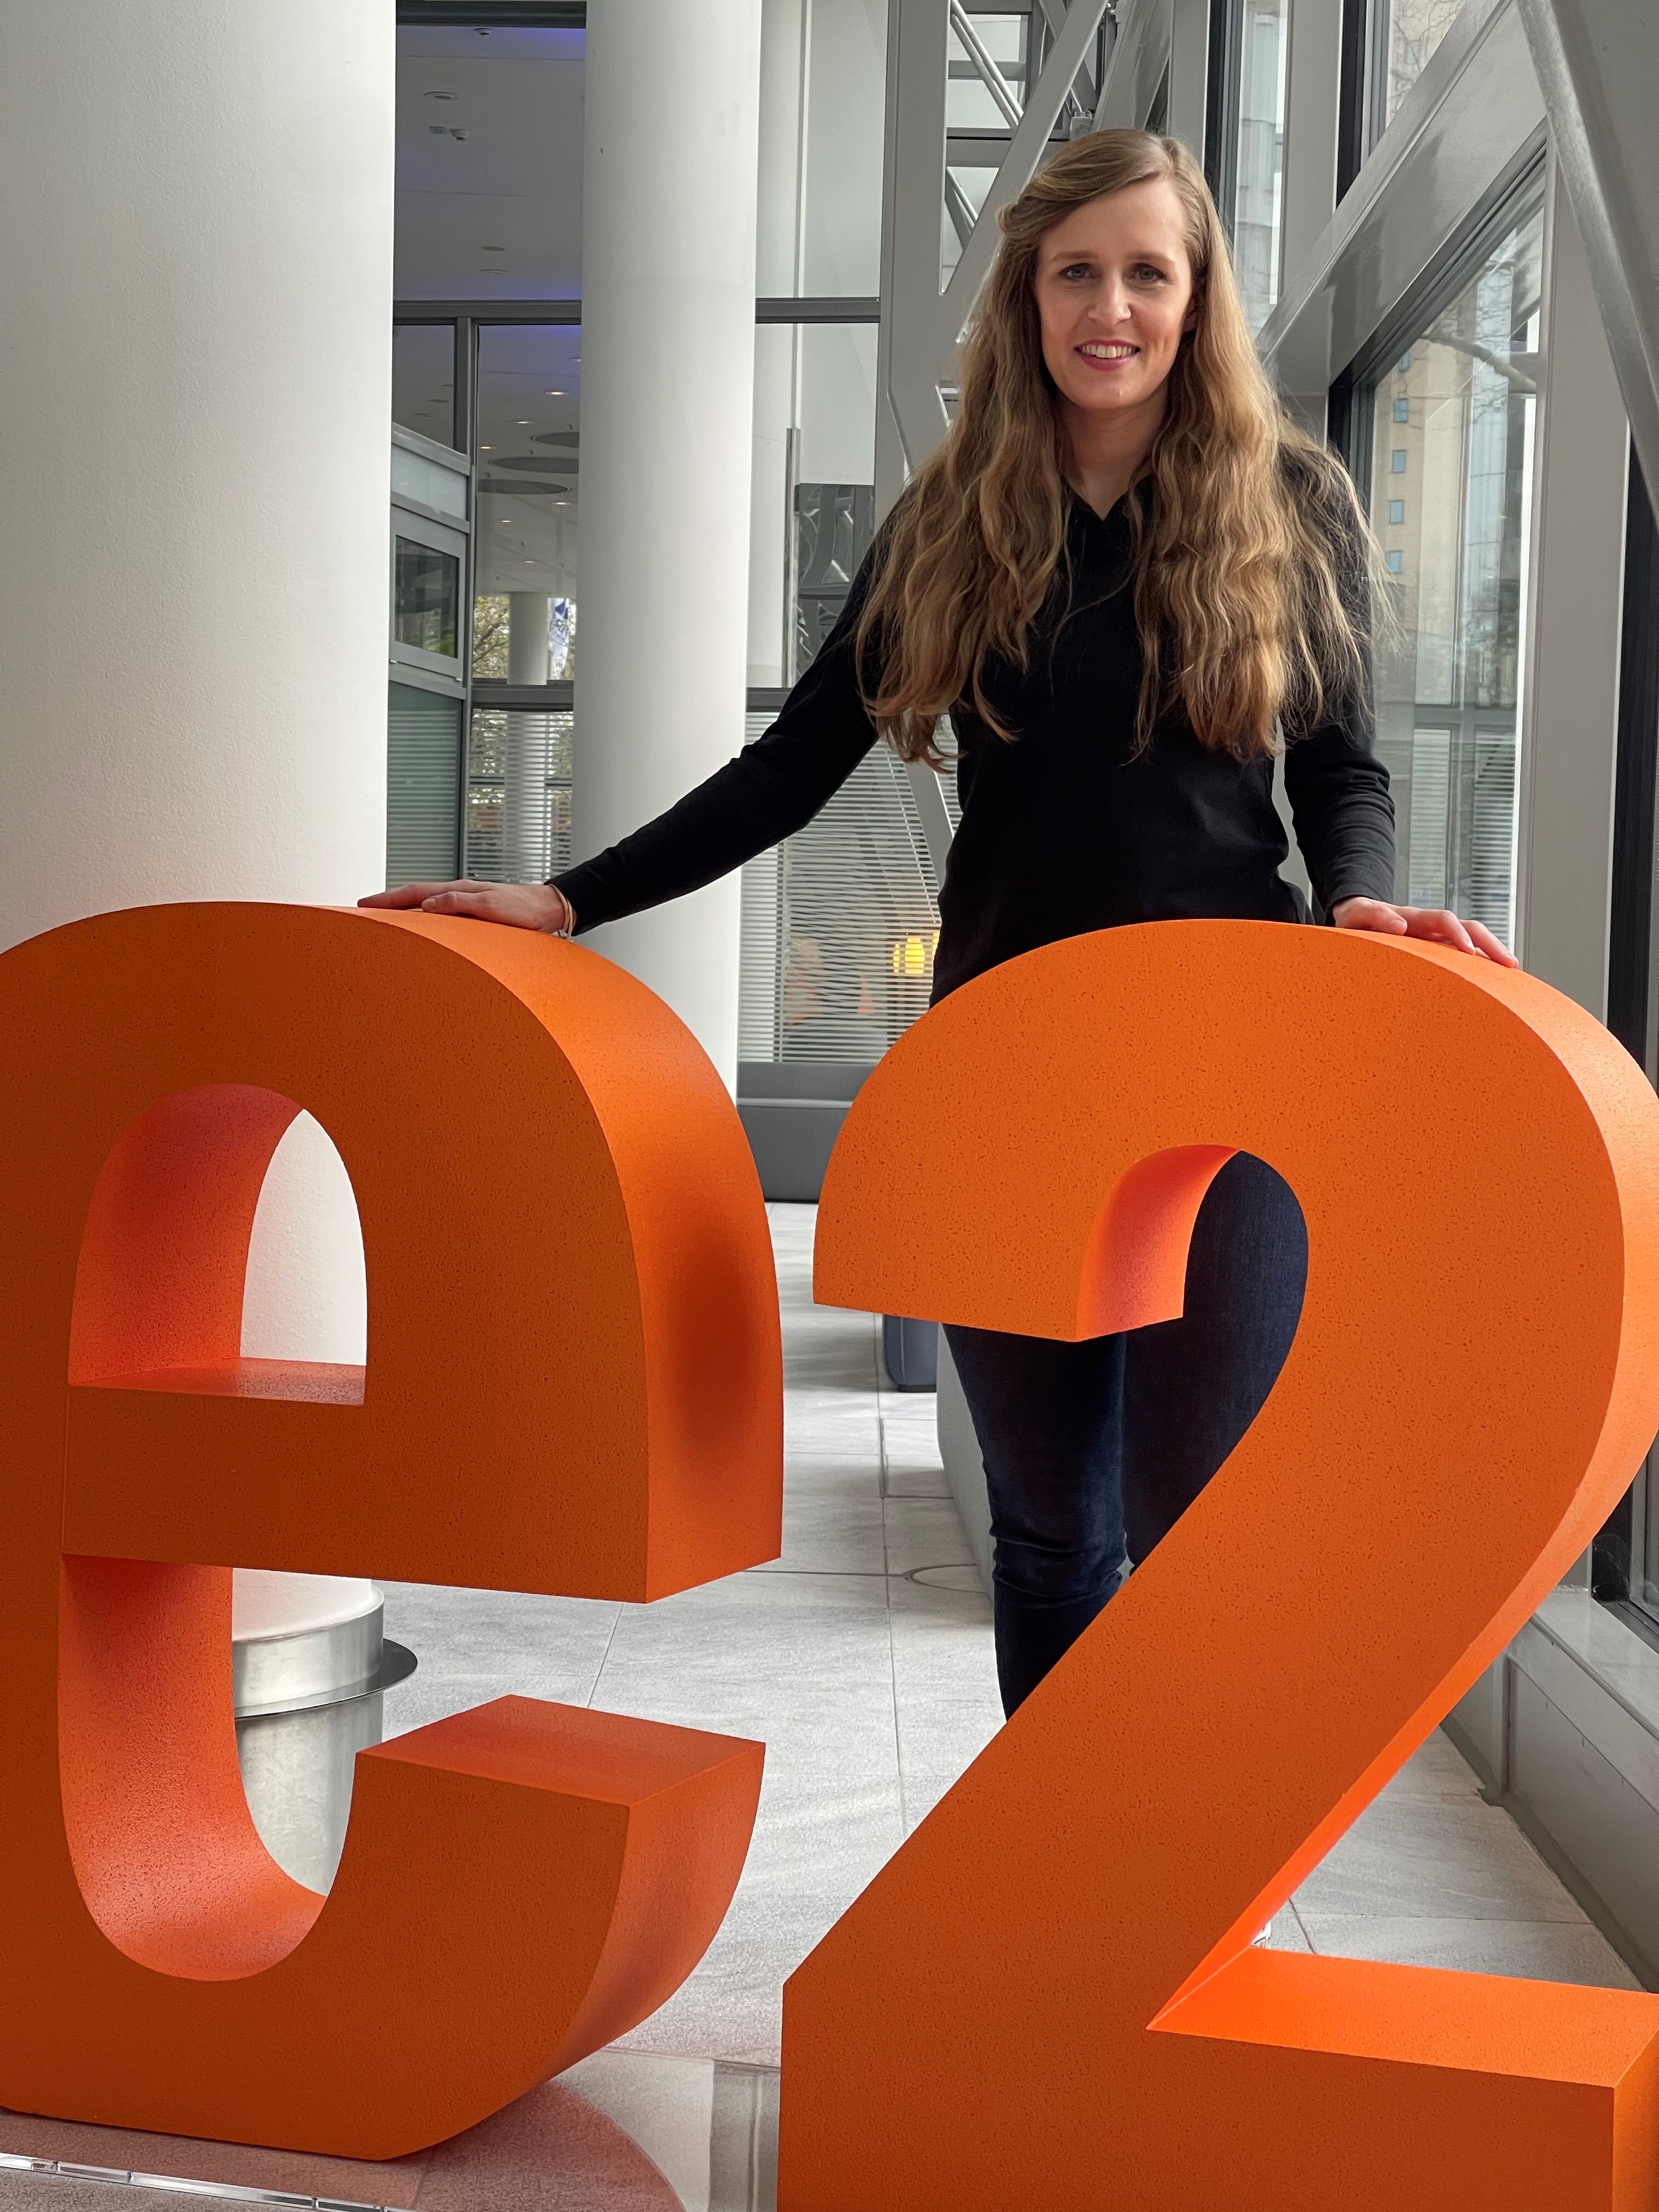 Tanja Zirnstein, Geschäftsführerin von UVIS UV-Innovative Solutions freut sich auf den persönlichen Austausch mit der Branche auf dem E2 Forum Frankfurt 2022.